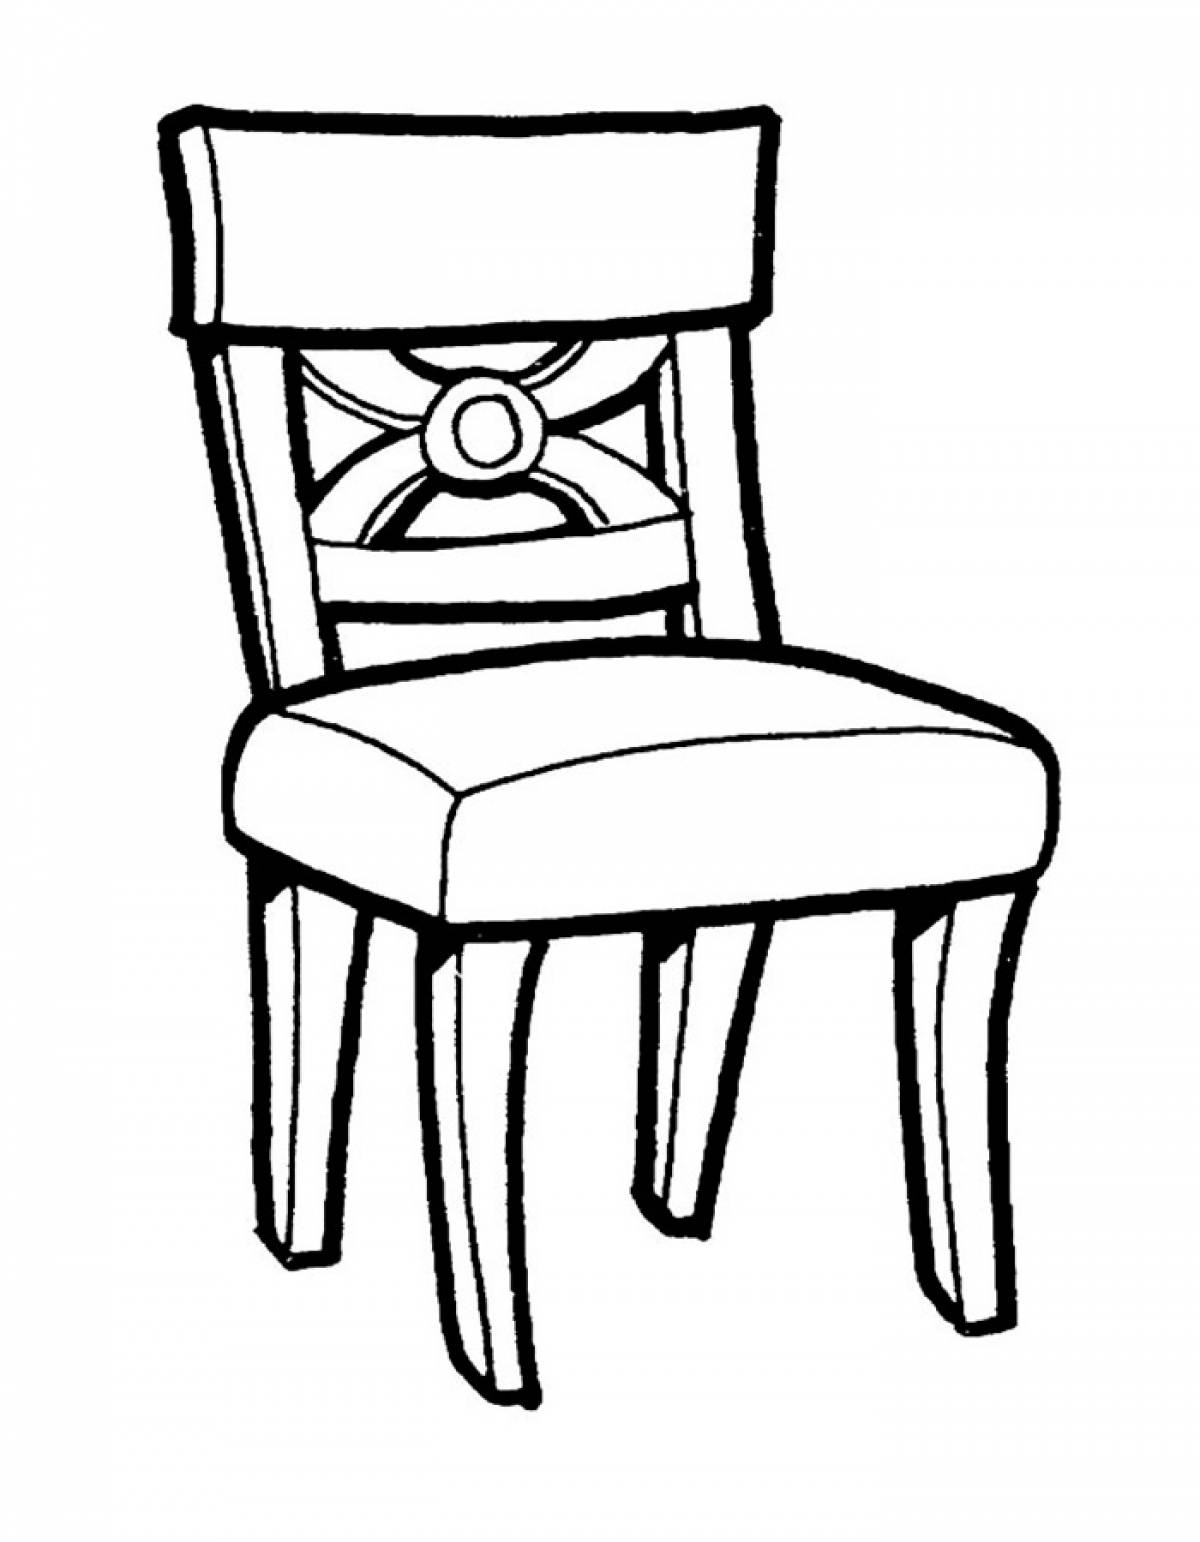 A soft chair